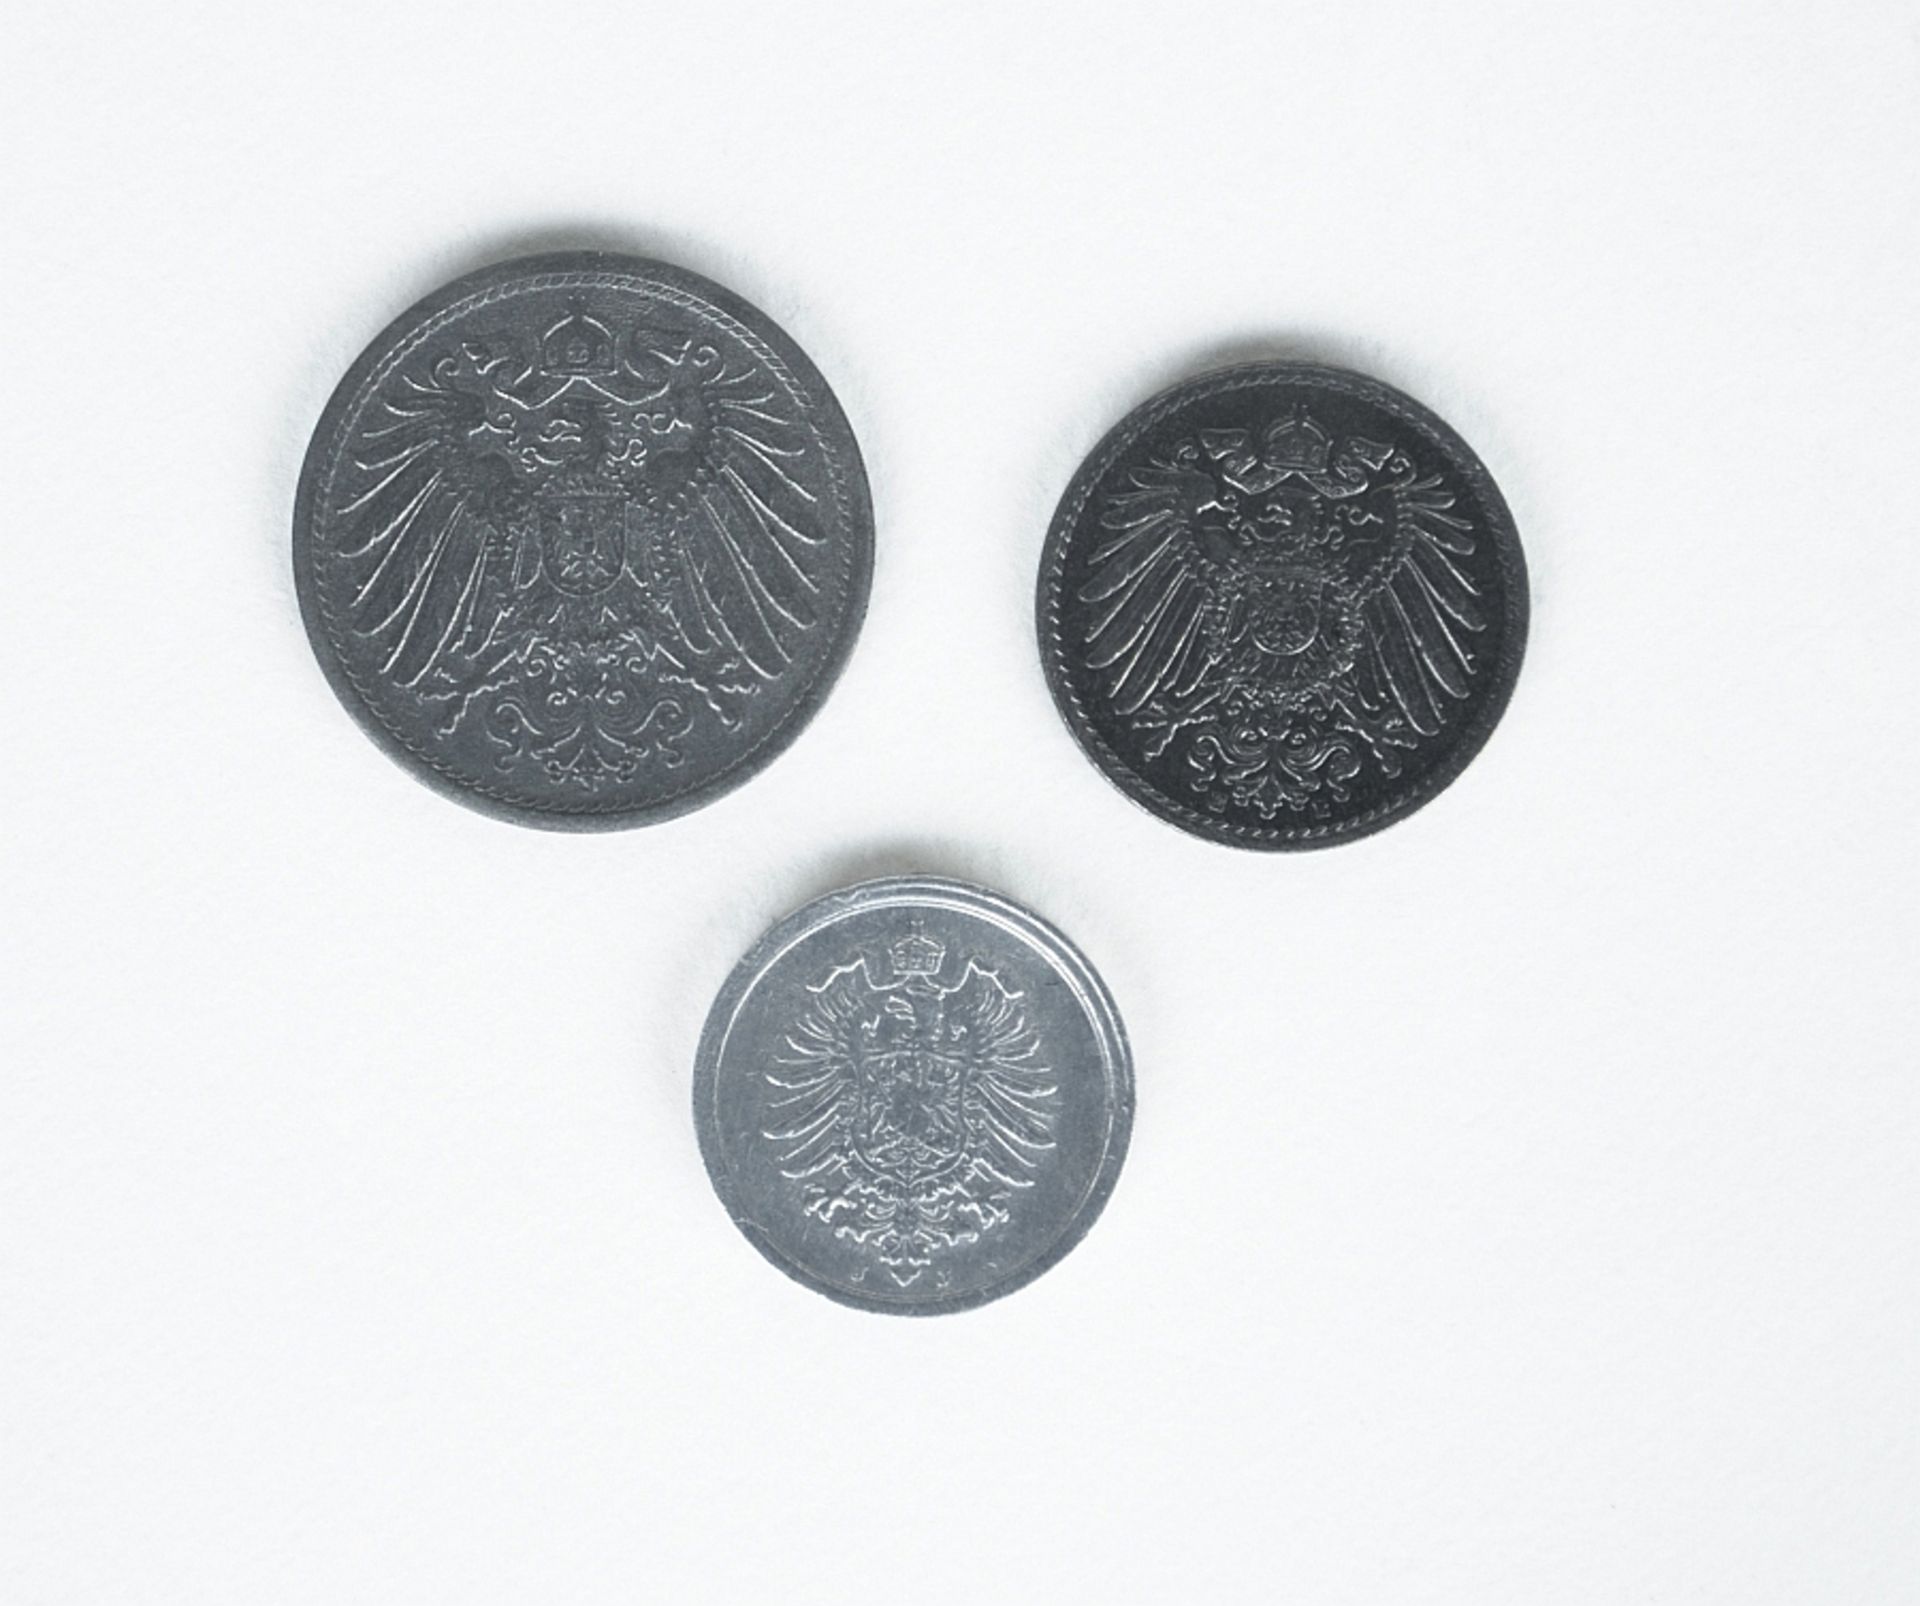 Ersatzmuenzen des Deutschen Kaiserreiches: 1 Pfennig, 5 Pfennig, 20 Pfennig - Image 2 of 2